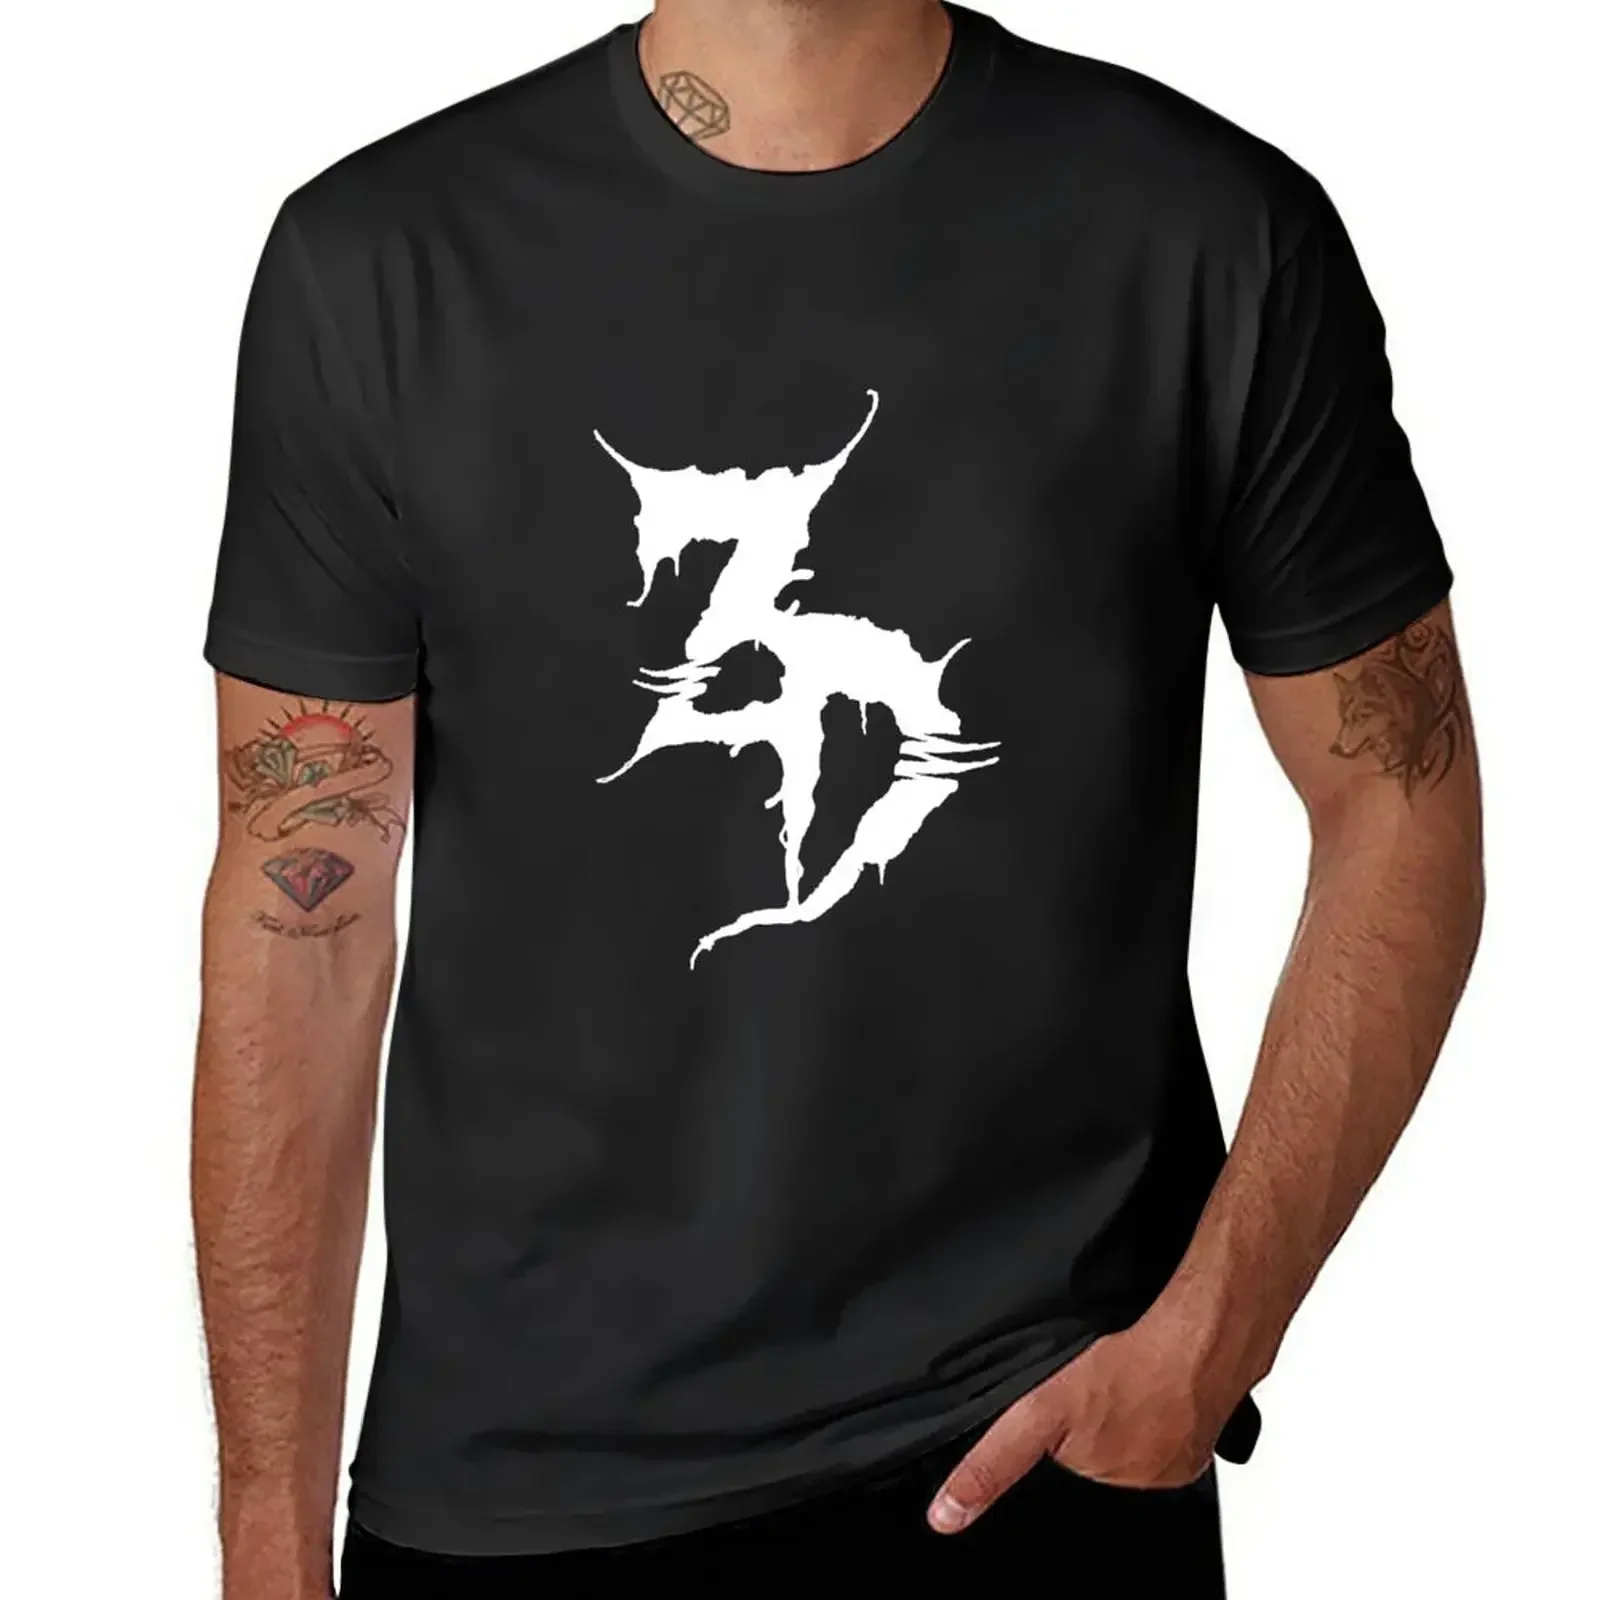 

Футболка Zeds Dead, футболки с графическим рисунком, эстетическая одежда, мужские футболки